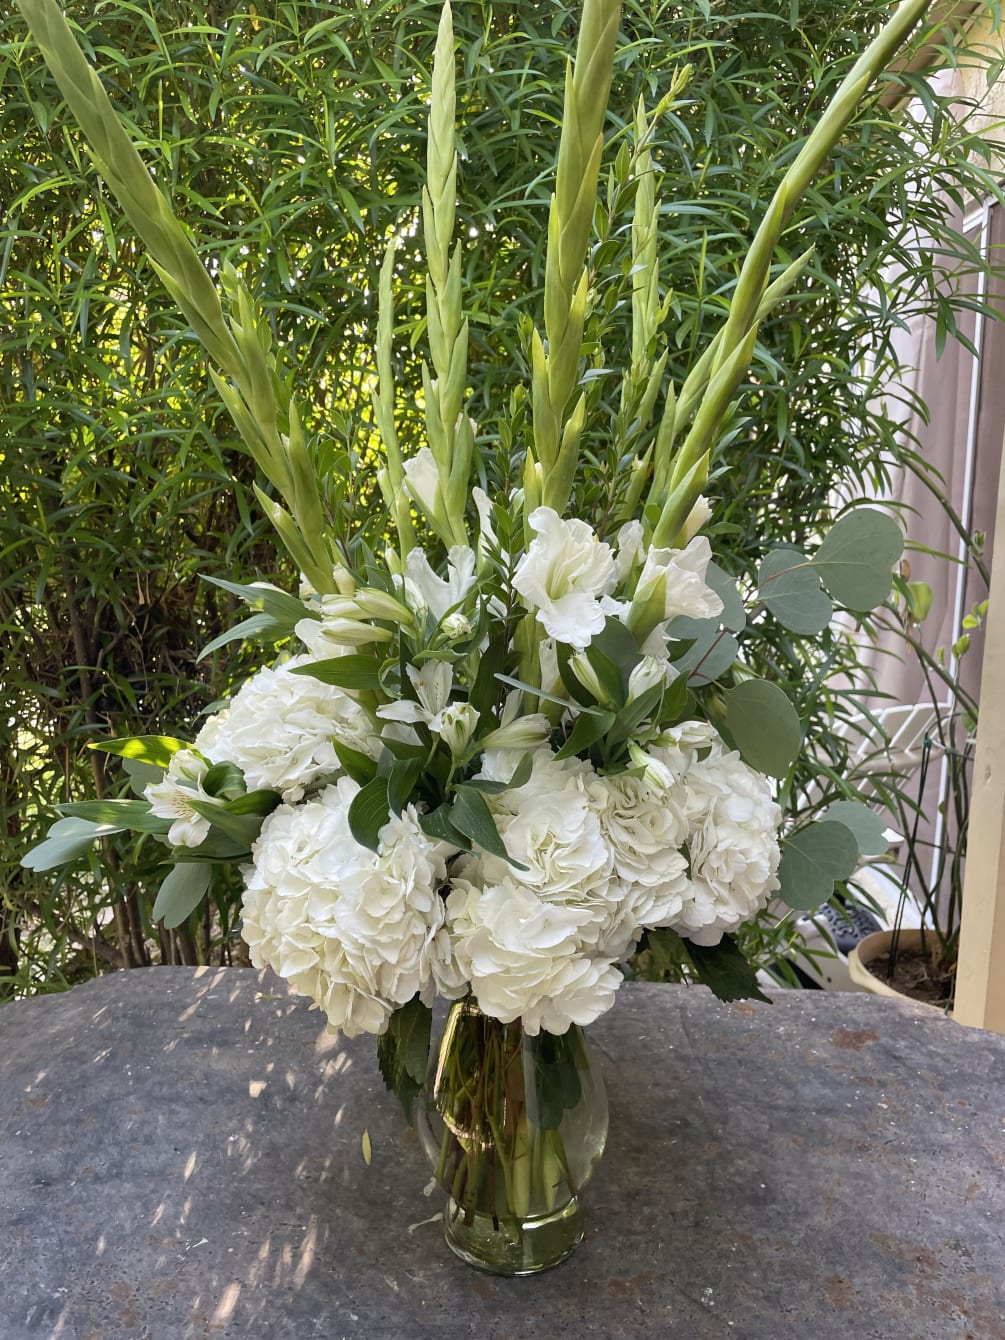 All white arrangement containing gladiolus, alstromeria and hydrangea